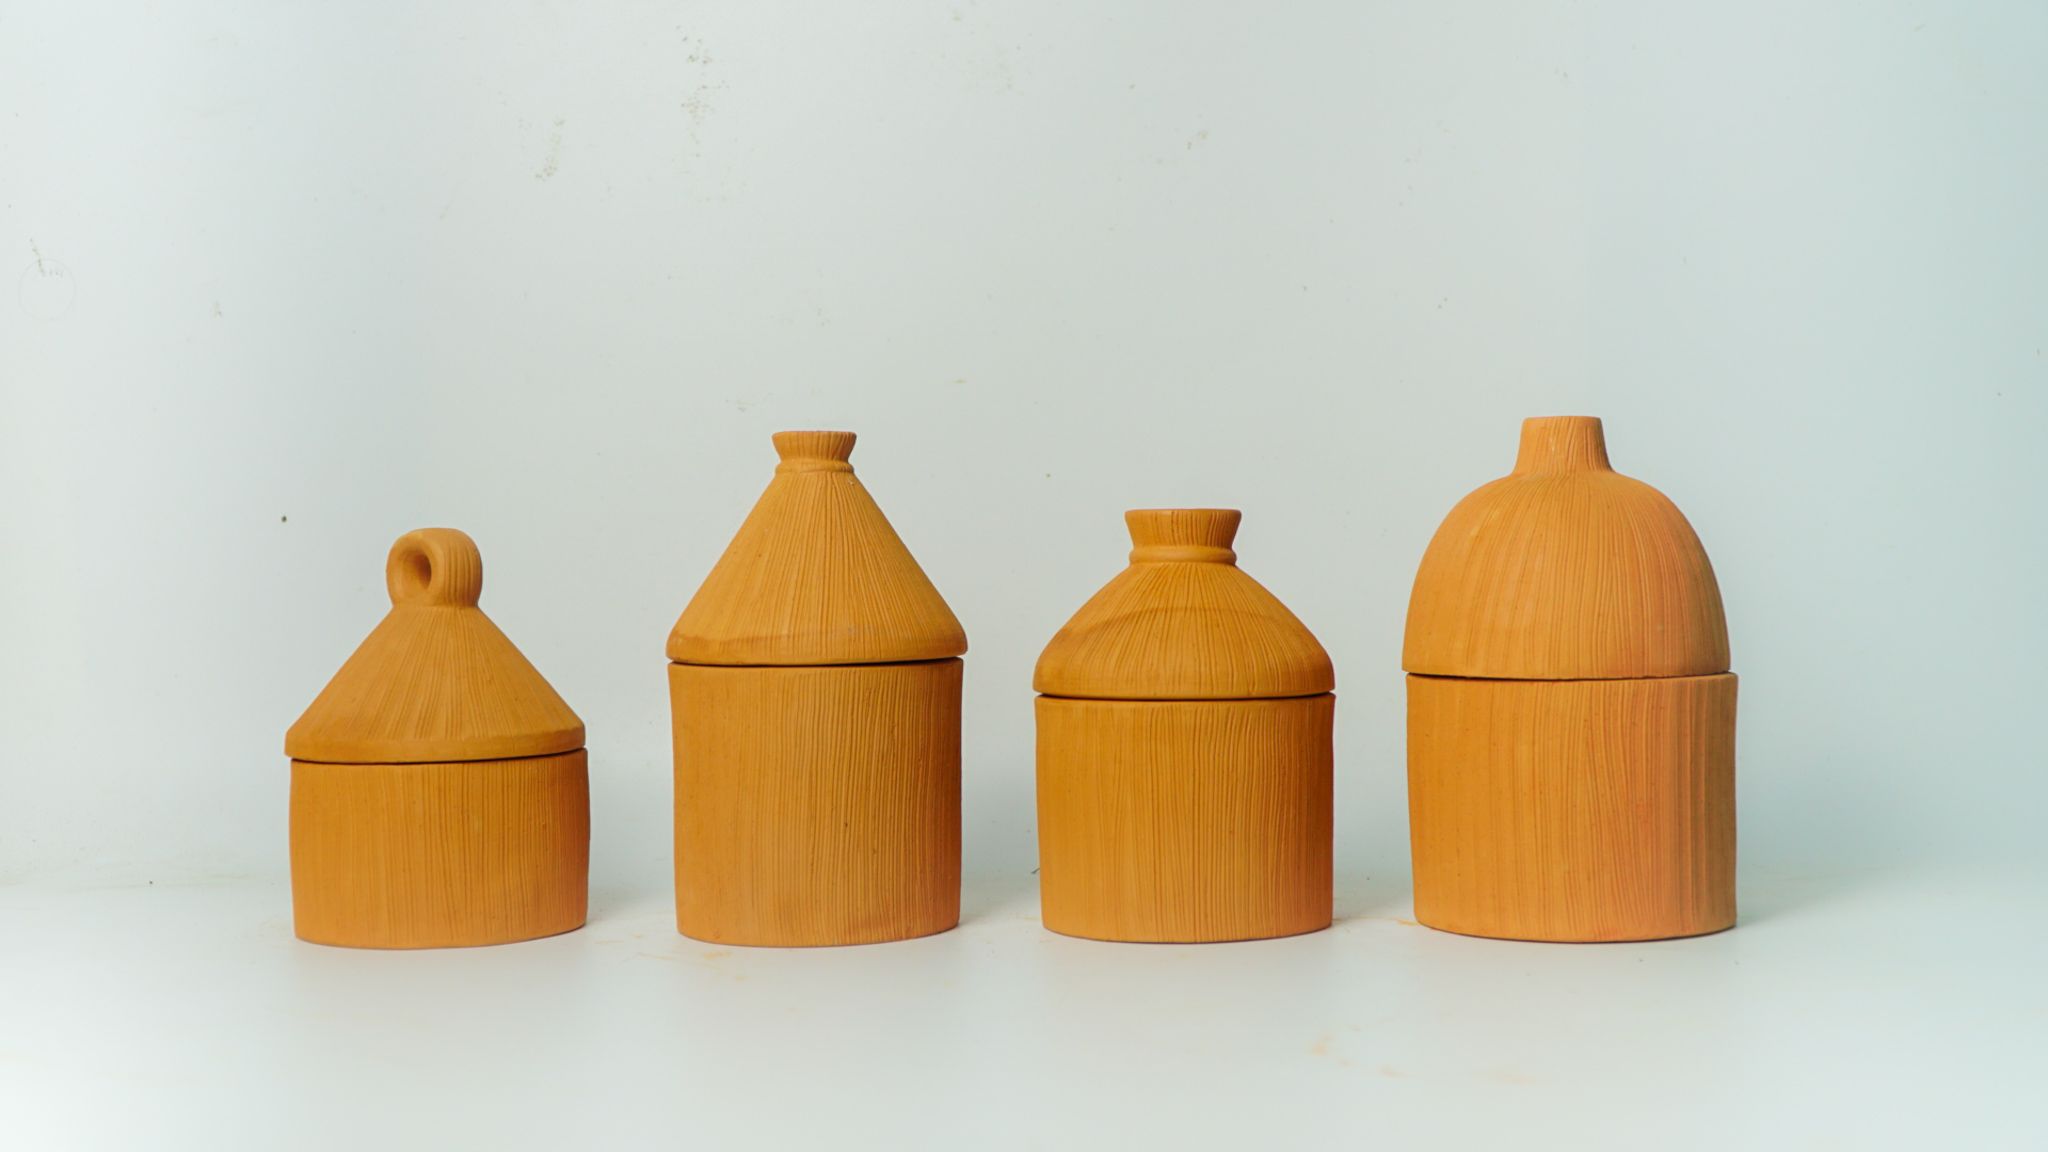  Hũ Đất Nung Handmade Có Nắp / Terra Cotta Jars With Lid - HD14 